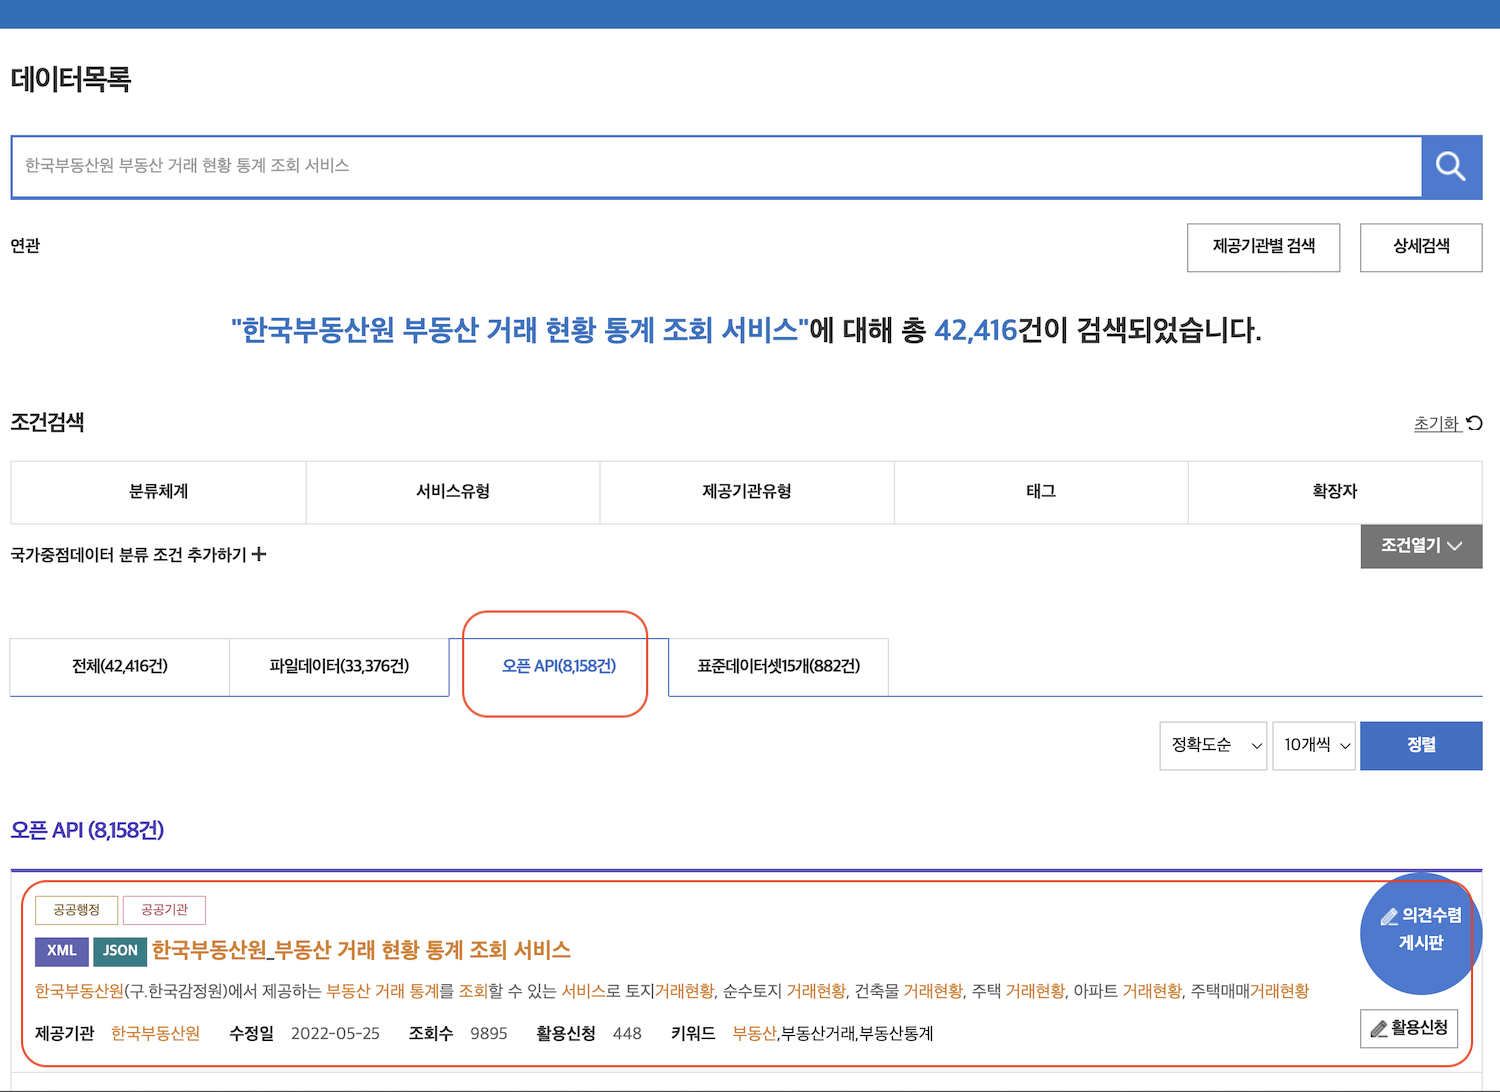 [그림 8] 한국부동산원 API 검색